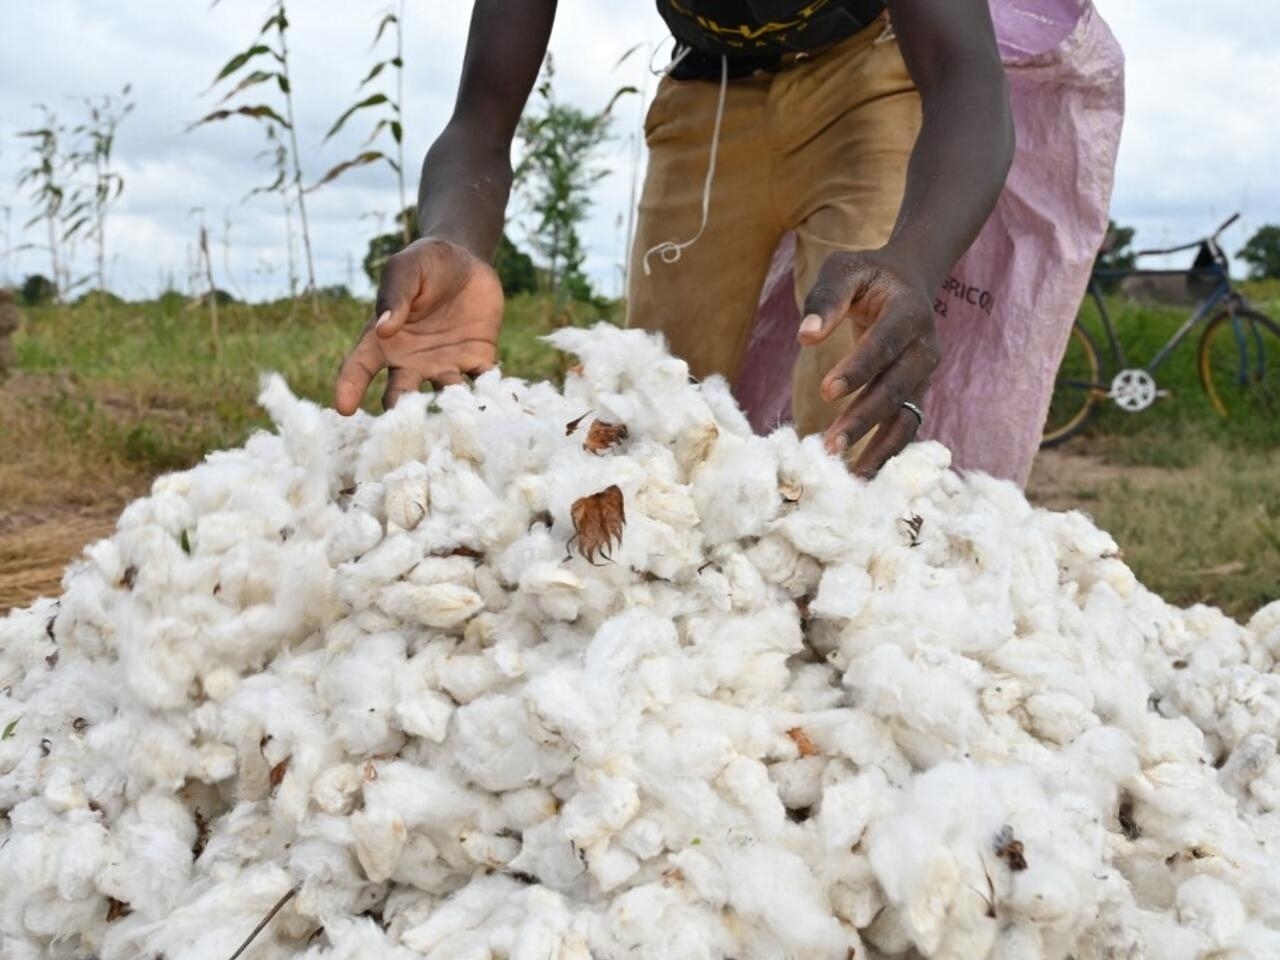 Afrique de l'Ouest: les acteurs de la filière coton se regroupent pour mieux défendre leurs intérêts